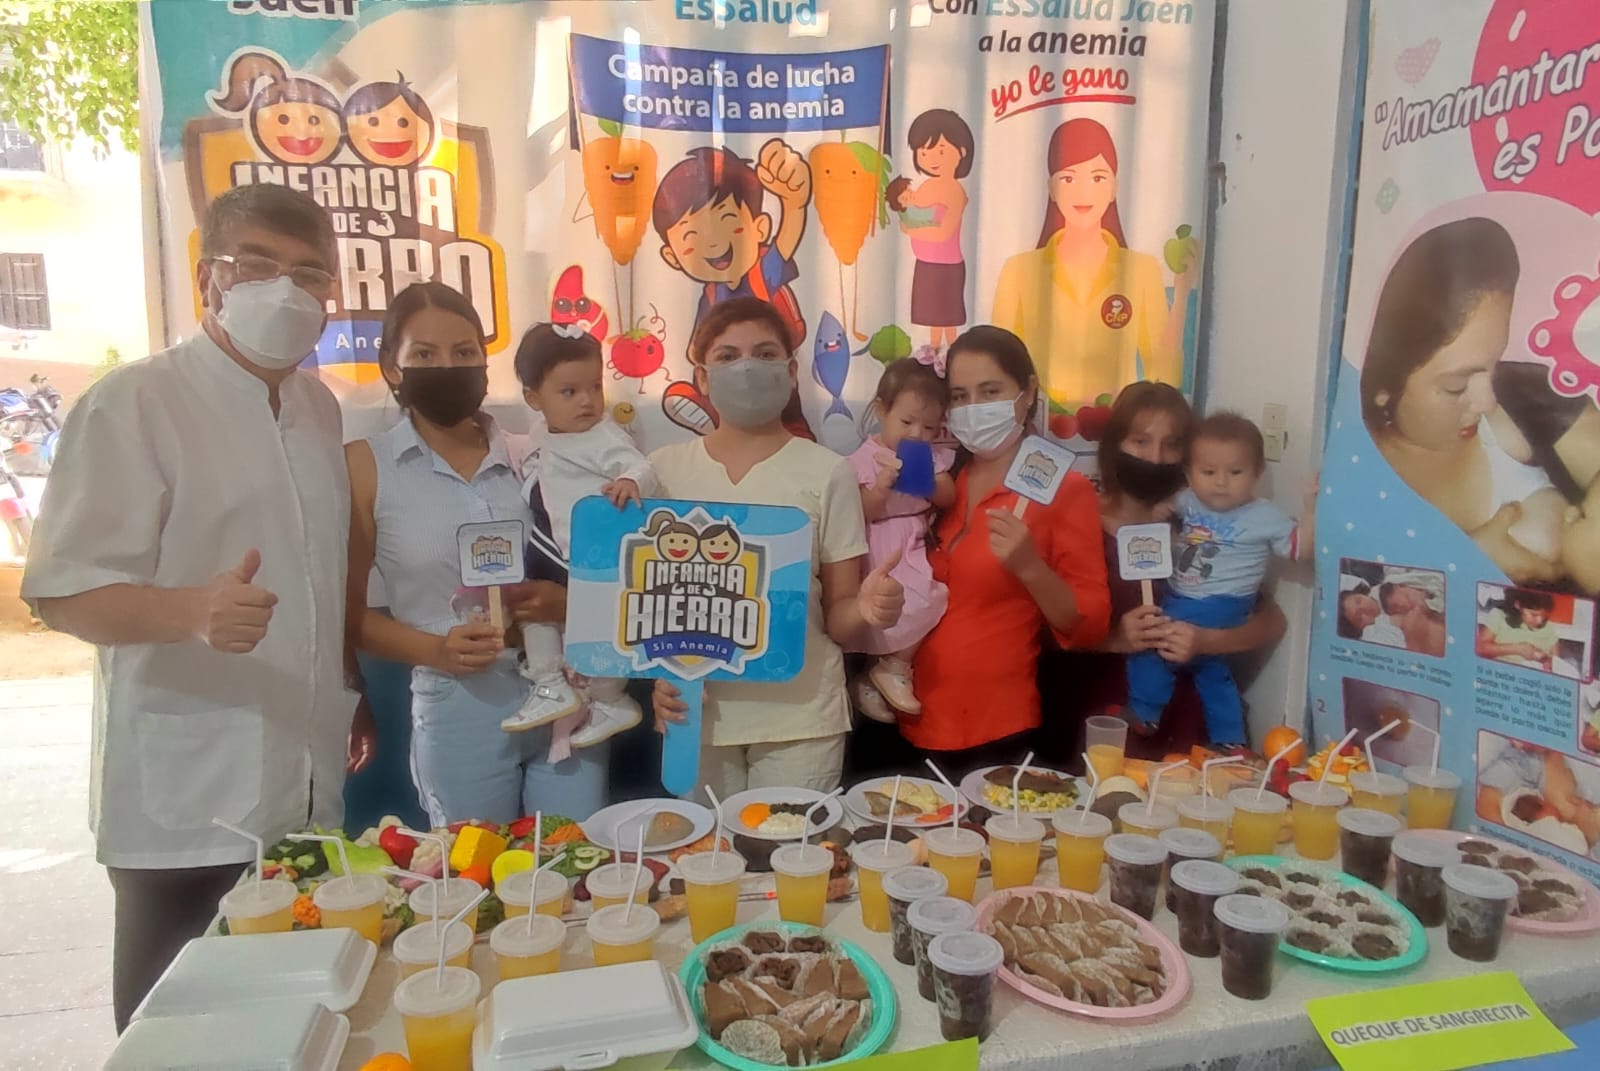 Essalud - EsSalud Jaén promueve la prevención de la anemia en niños y gestantes